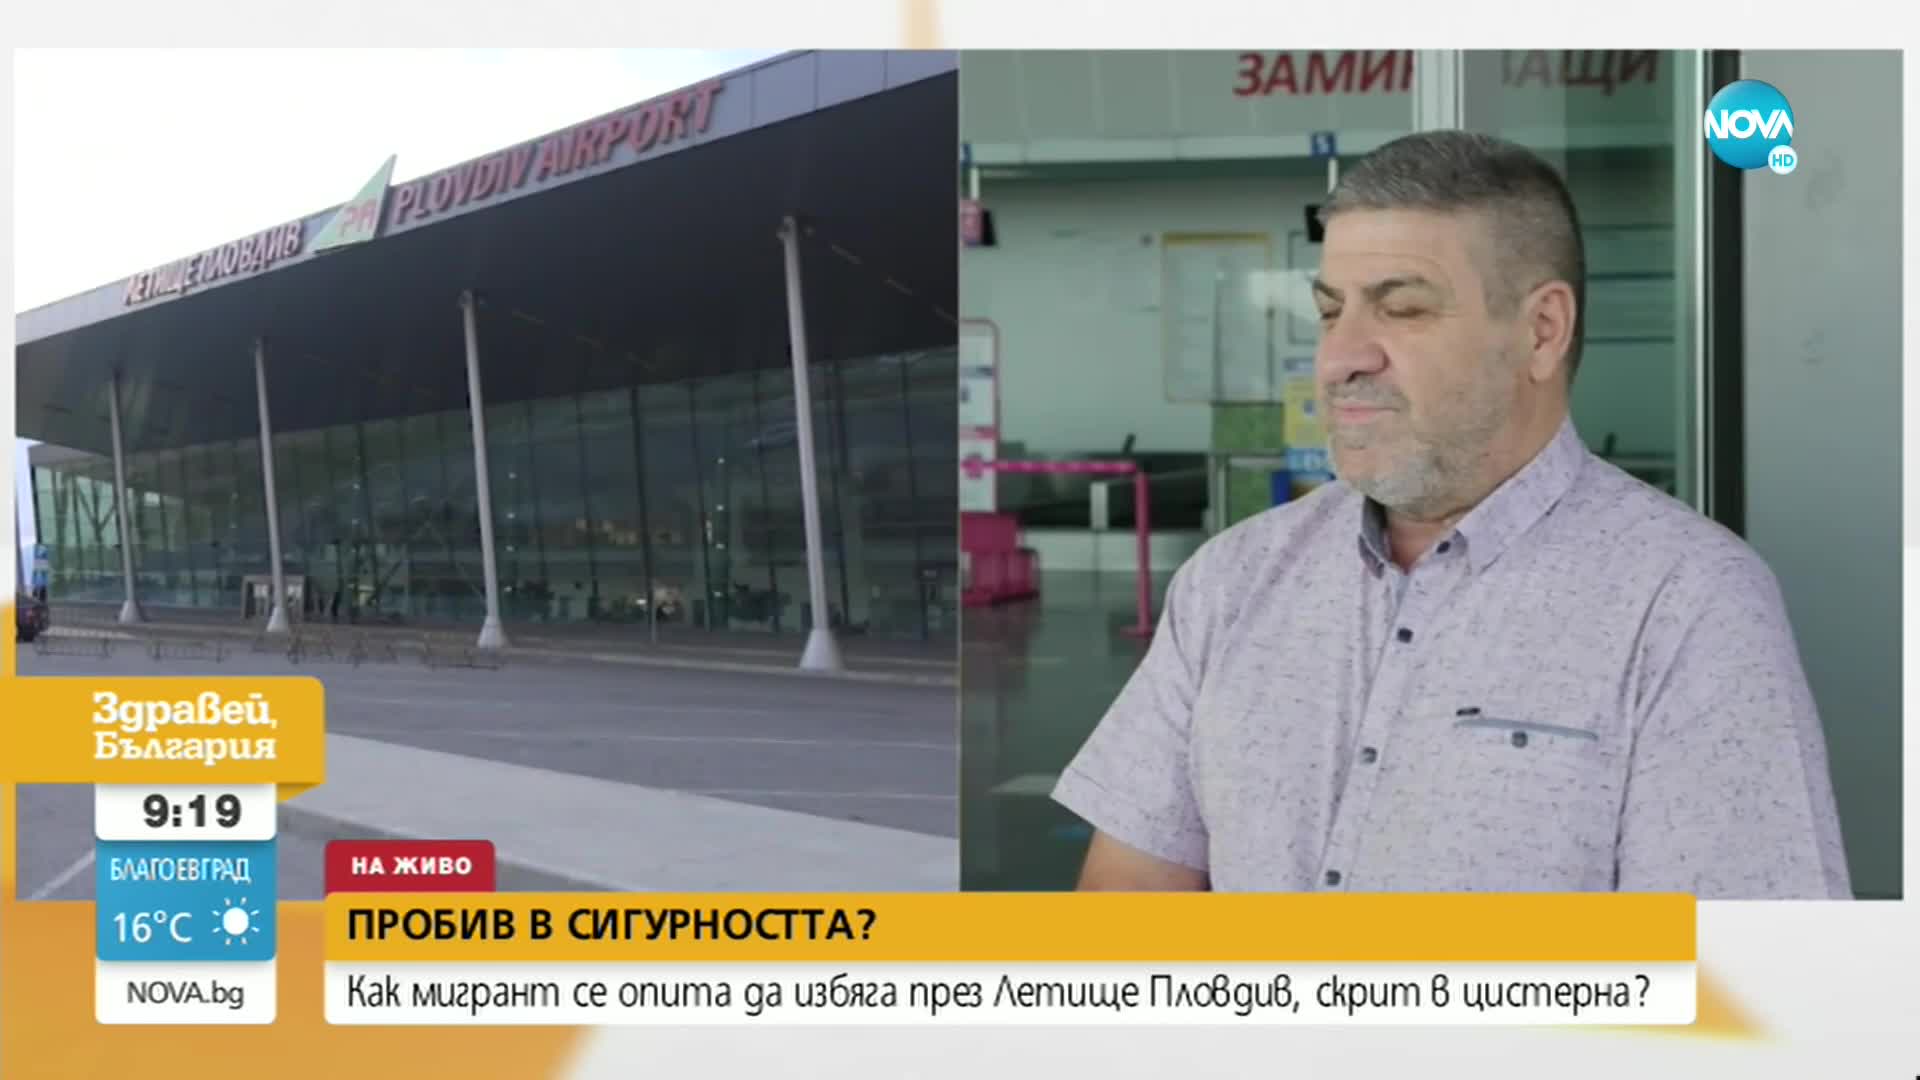 Как мигрант се опита да избяга през летище Пловдив, скрит в цистерна